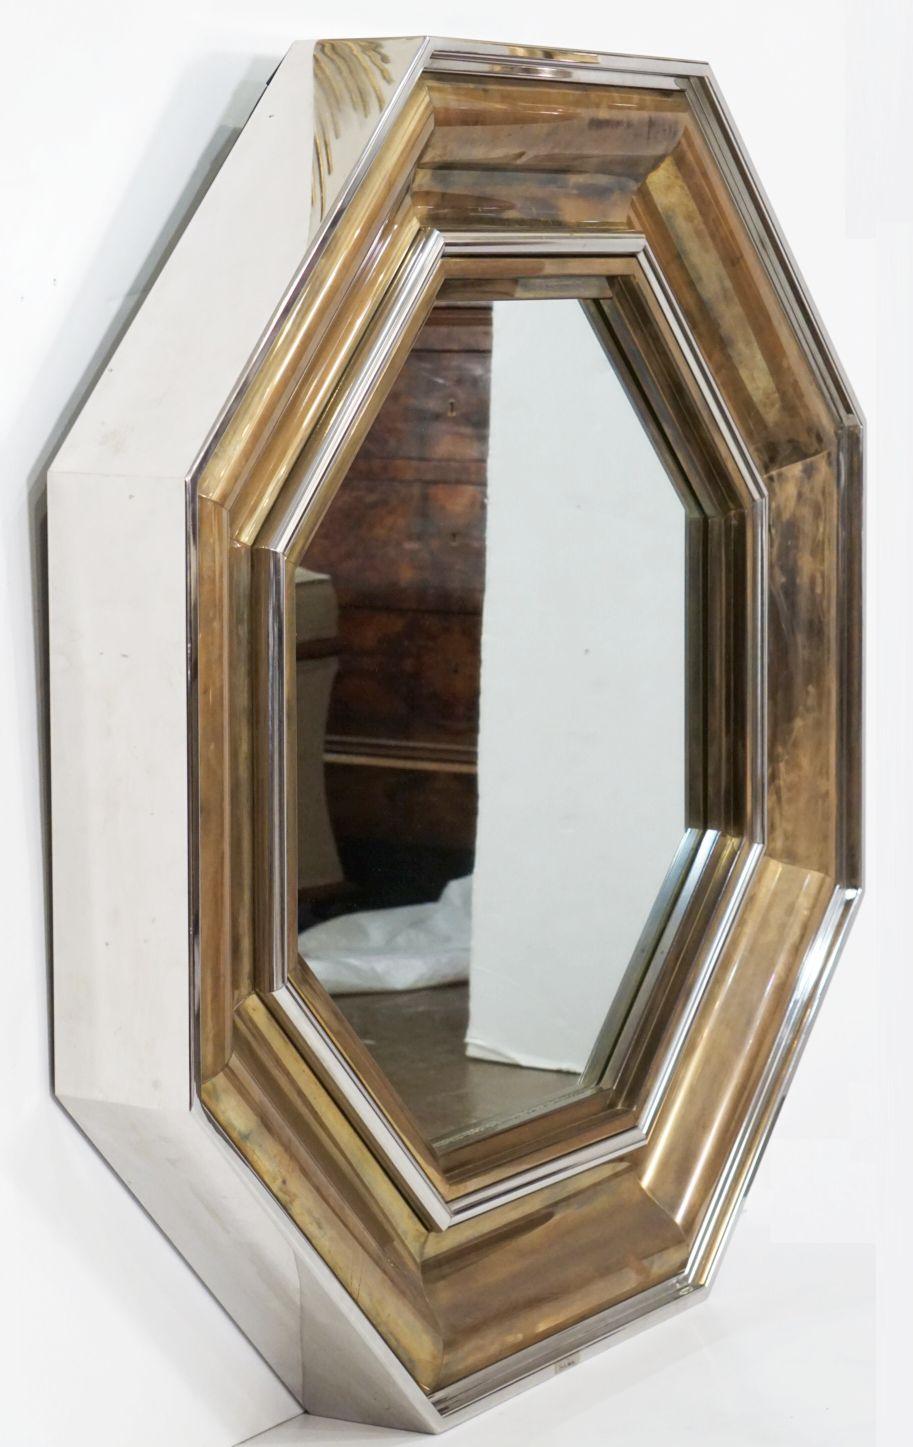 Ein wunderschöner großer italienischer achteckiger Spiegel aus Messing und Chrom - entworfen von dem berühmten italienischen Architekten Sandro Petti für das französische Designhaus Maison Jansen und hergestellt von L'angolo Metallarte in den 1970er